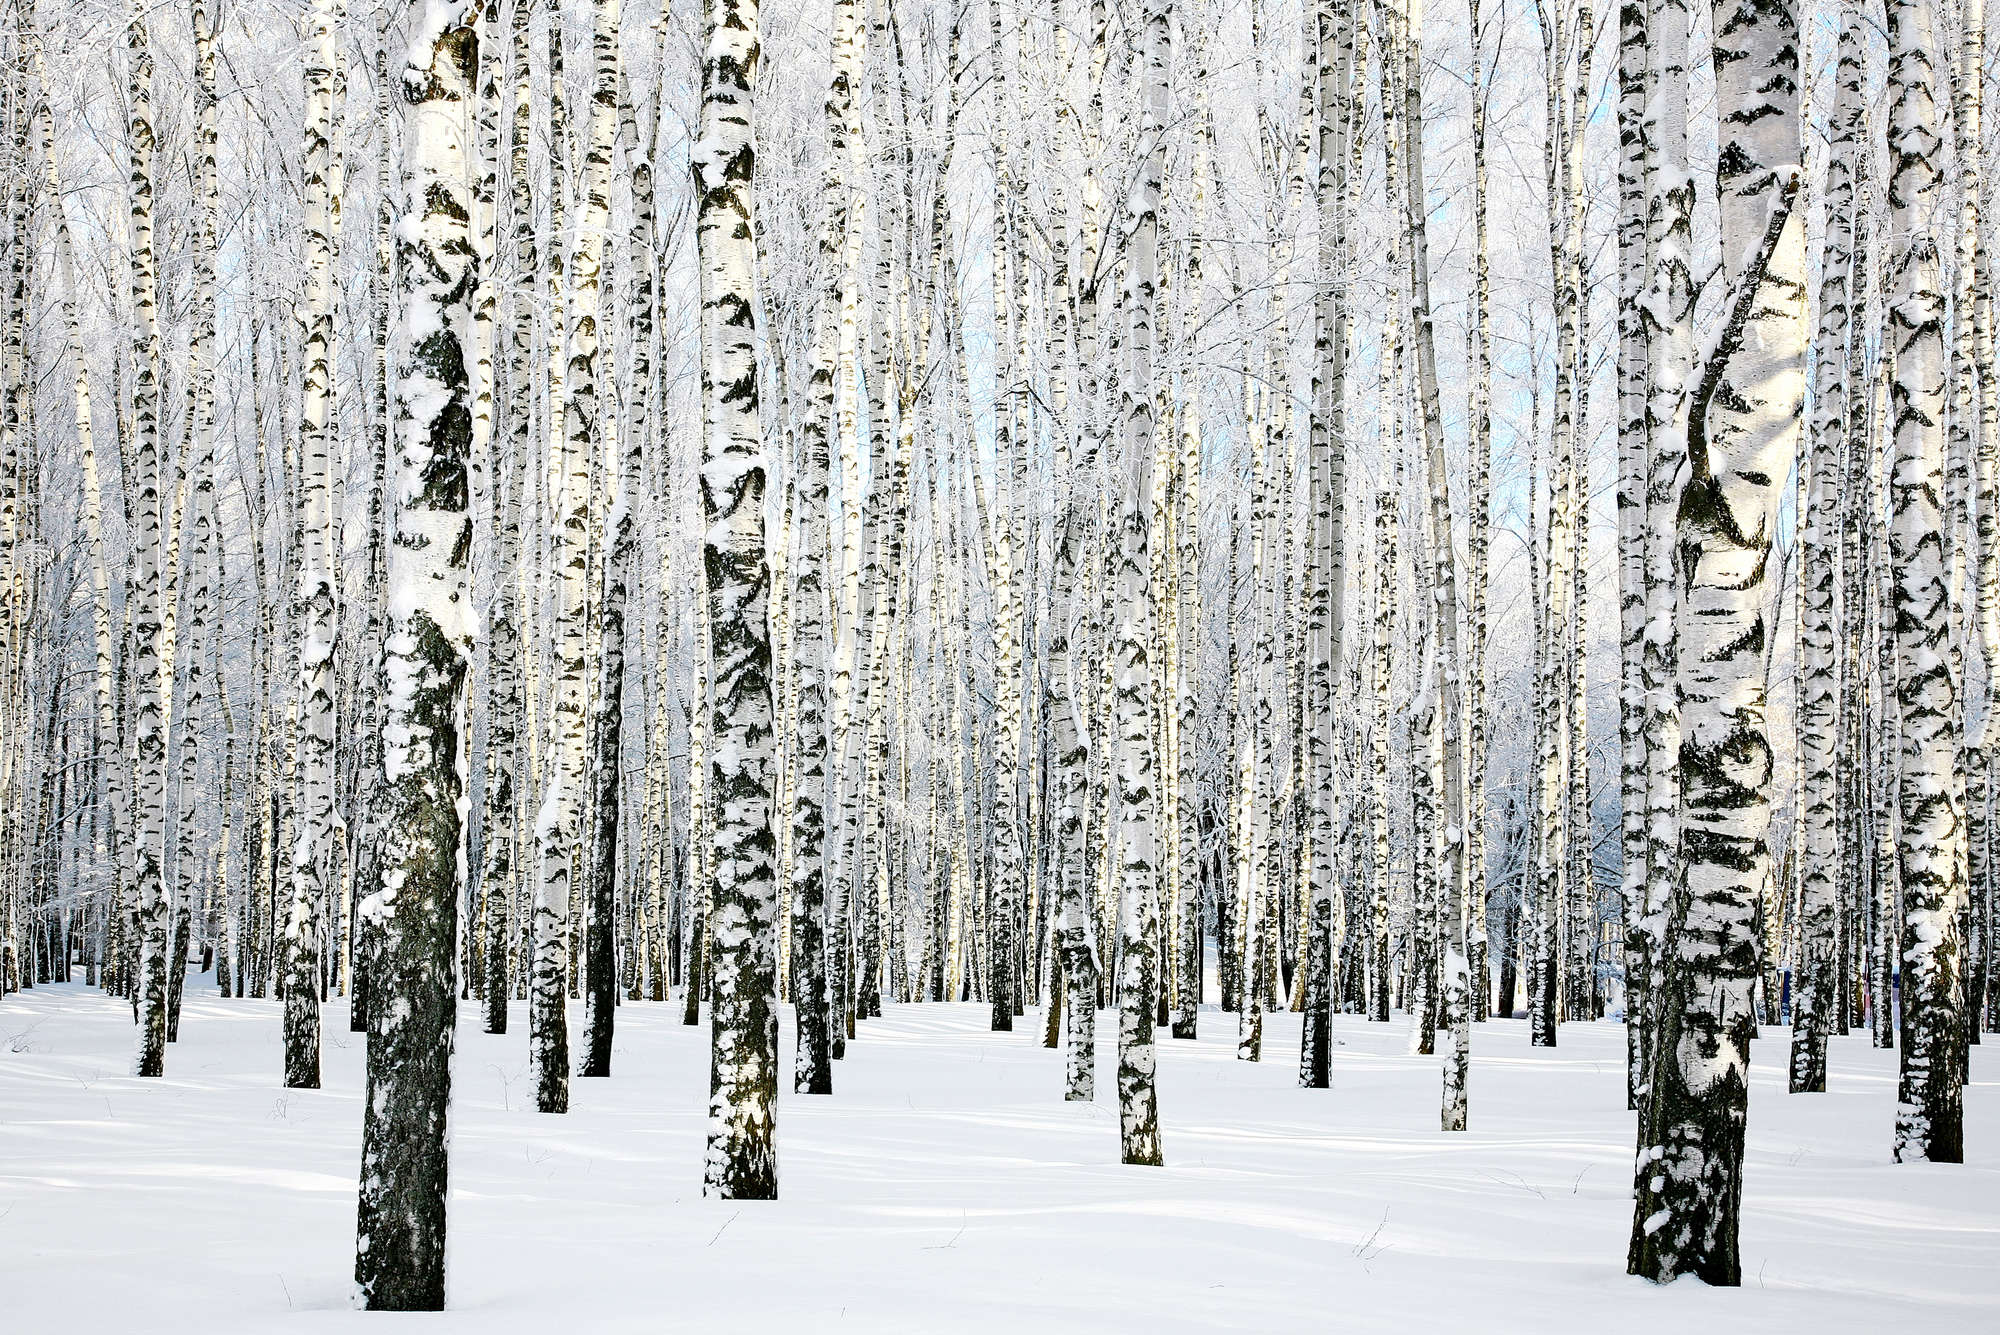             Papier peint nature forêt de bouleaux en hiver sur intissé lisse nacré
        